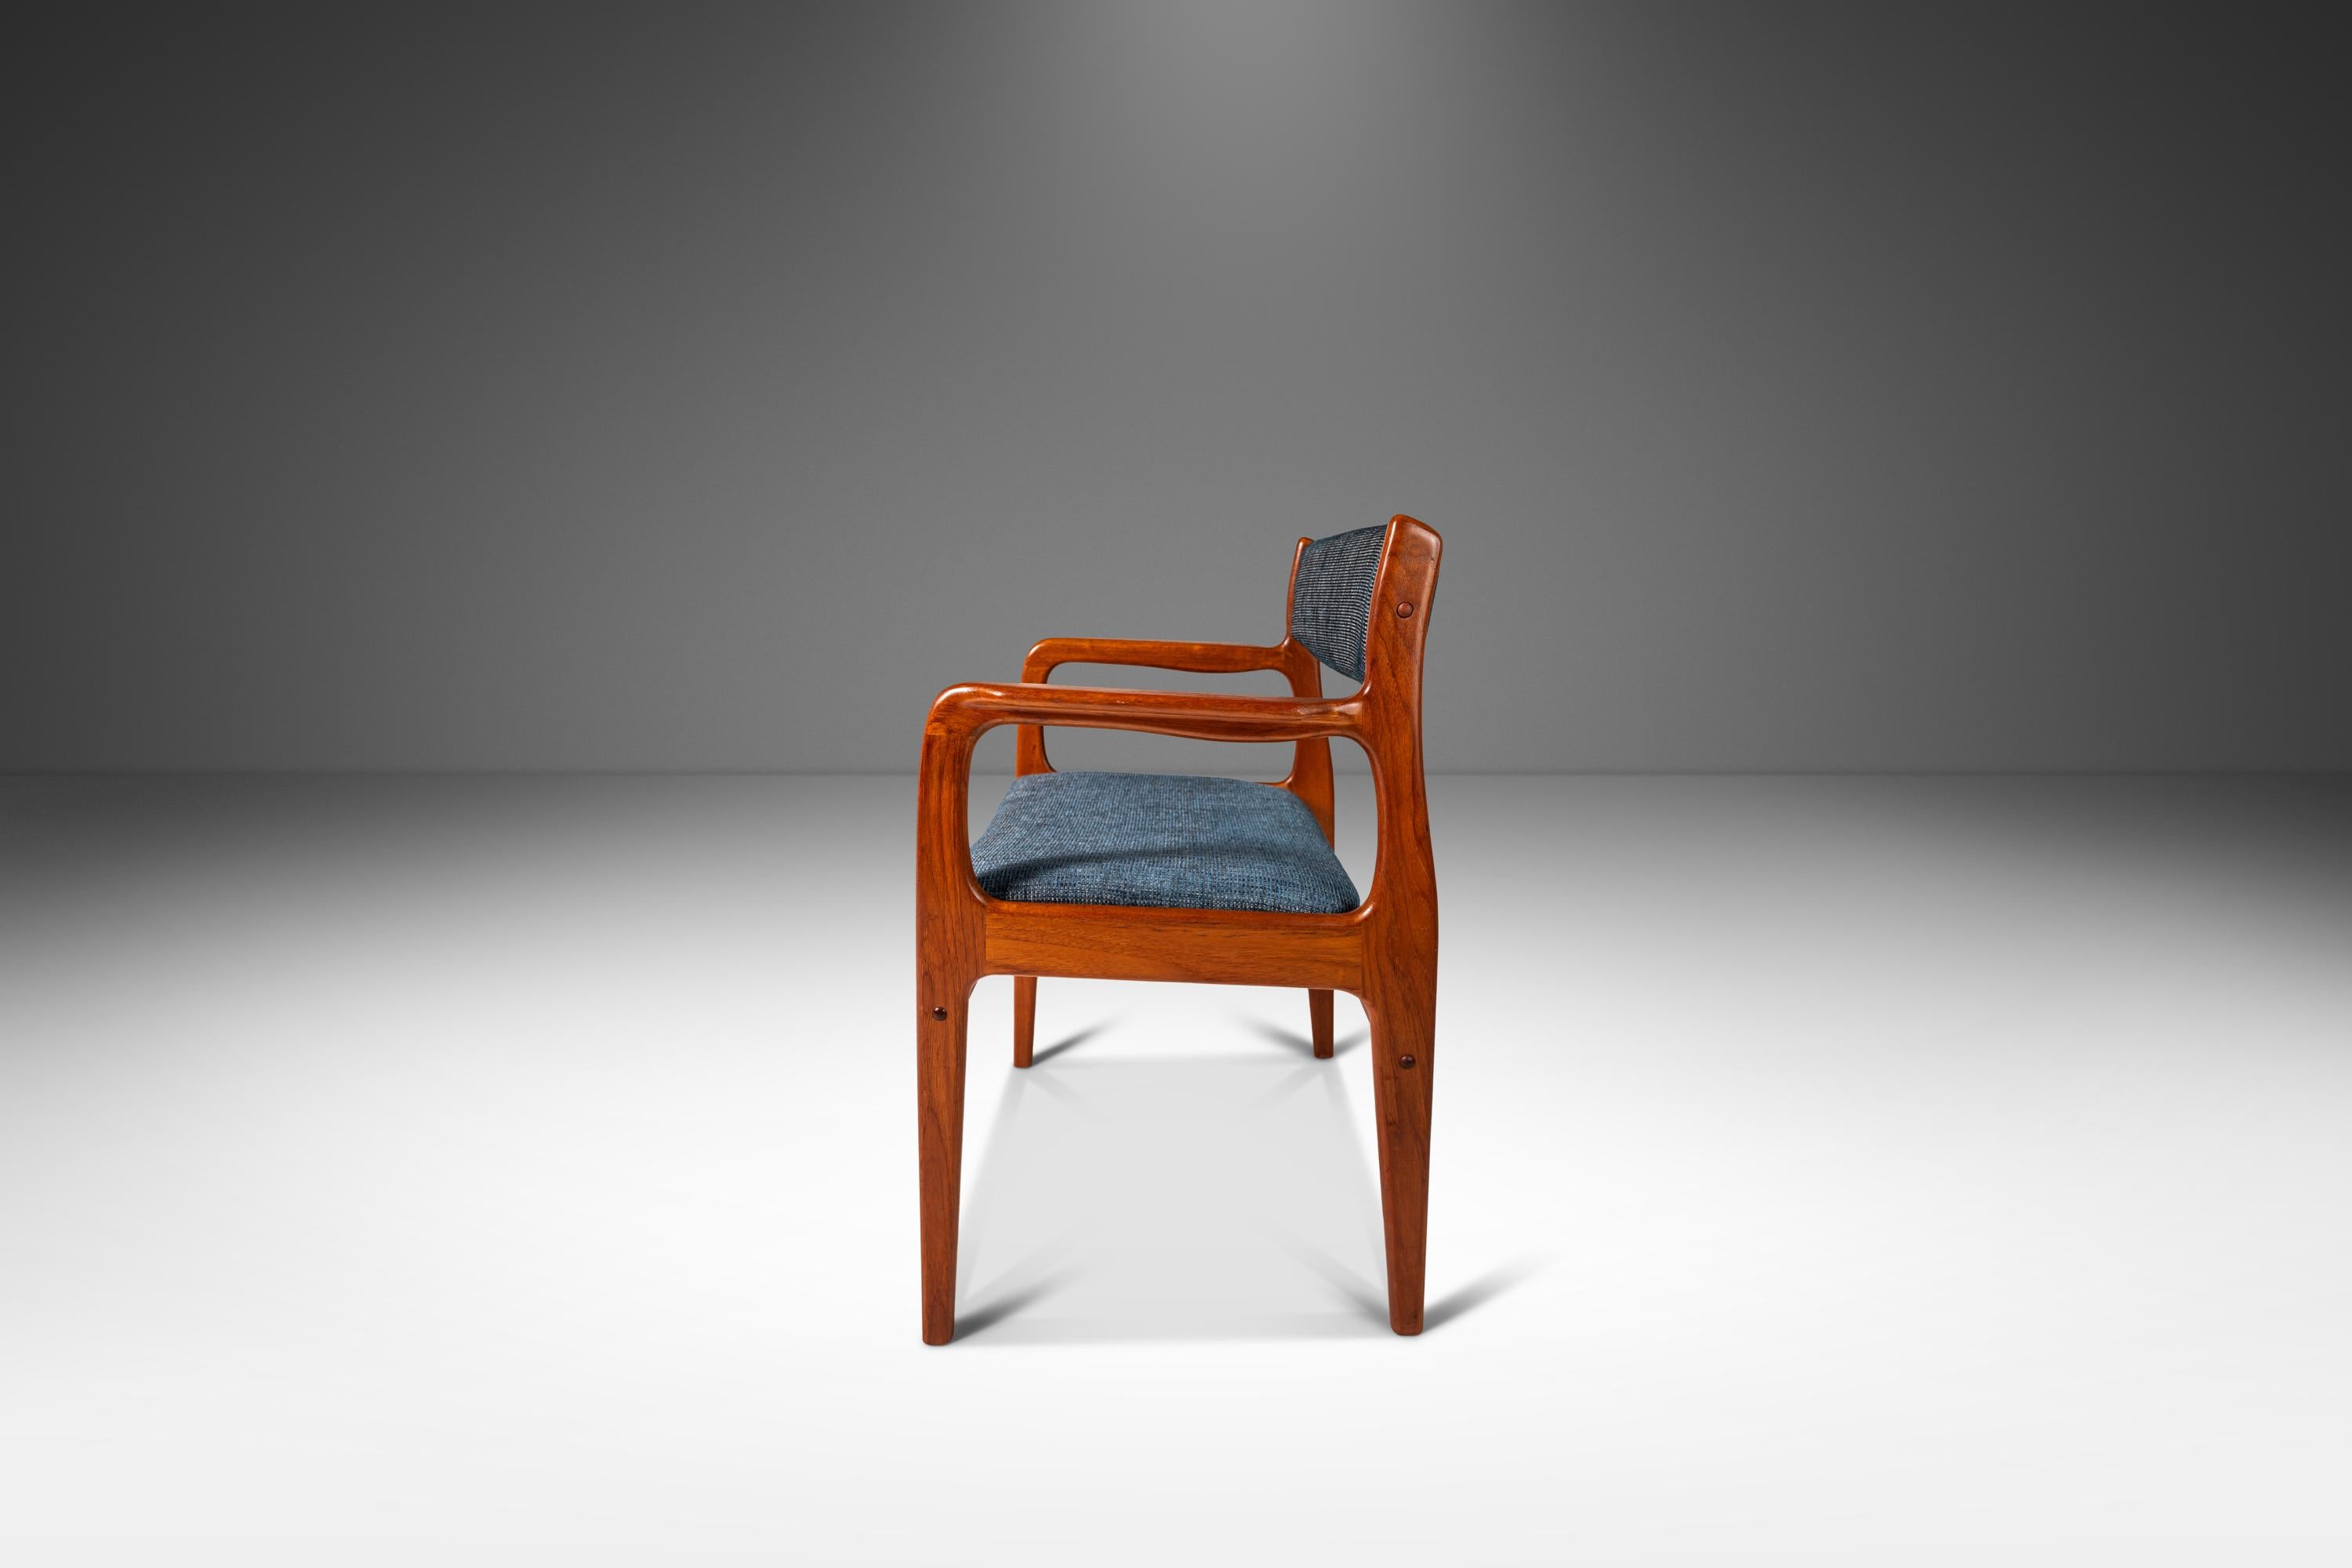 Voici un fauteuil récemment restauré par Benny Linden Designs. Construite en teck massif de Birmanie avec des veinures exceptionnelles, cette magnifique chaise de bureau est recouverte d'une nouvelle tapisserie, refaite dans un fabuleux tissu en